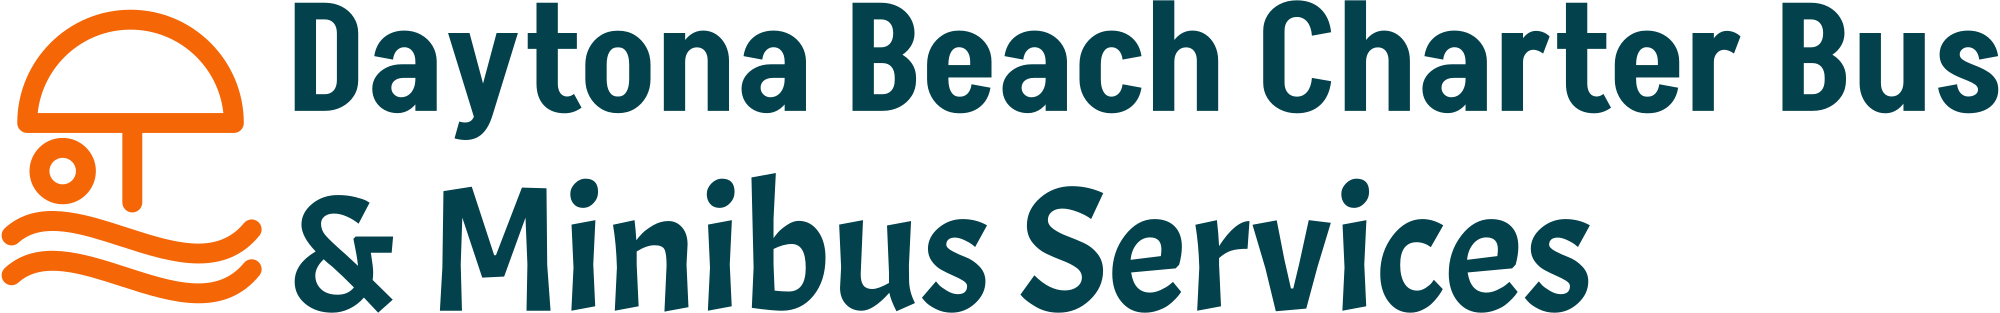 Charter Bus Company Daytona Beach logo